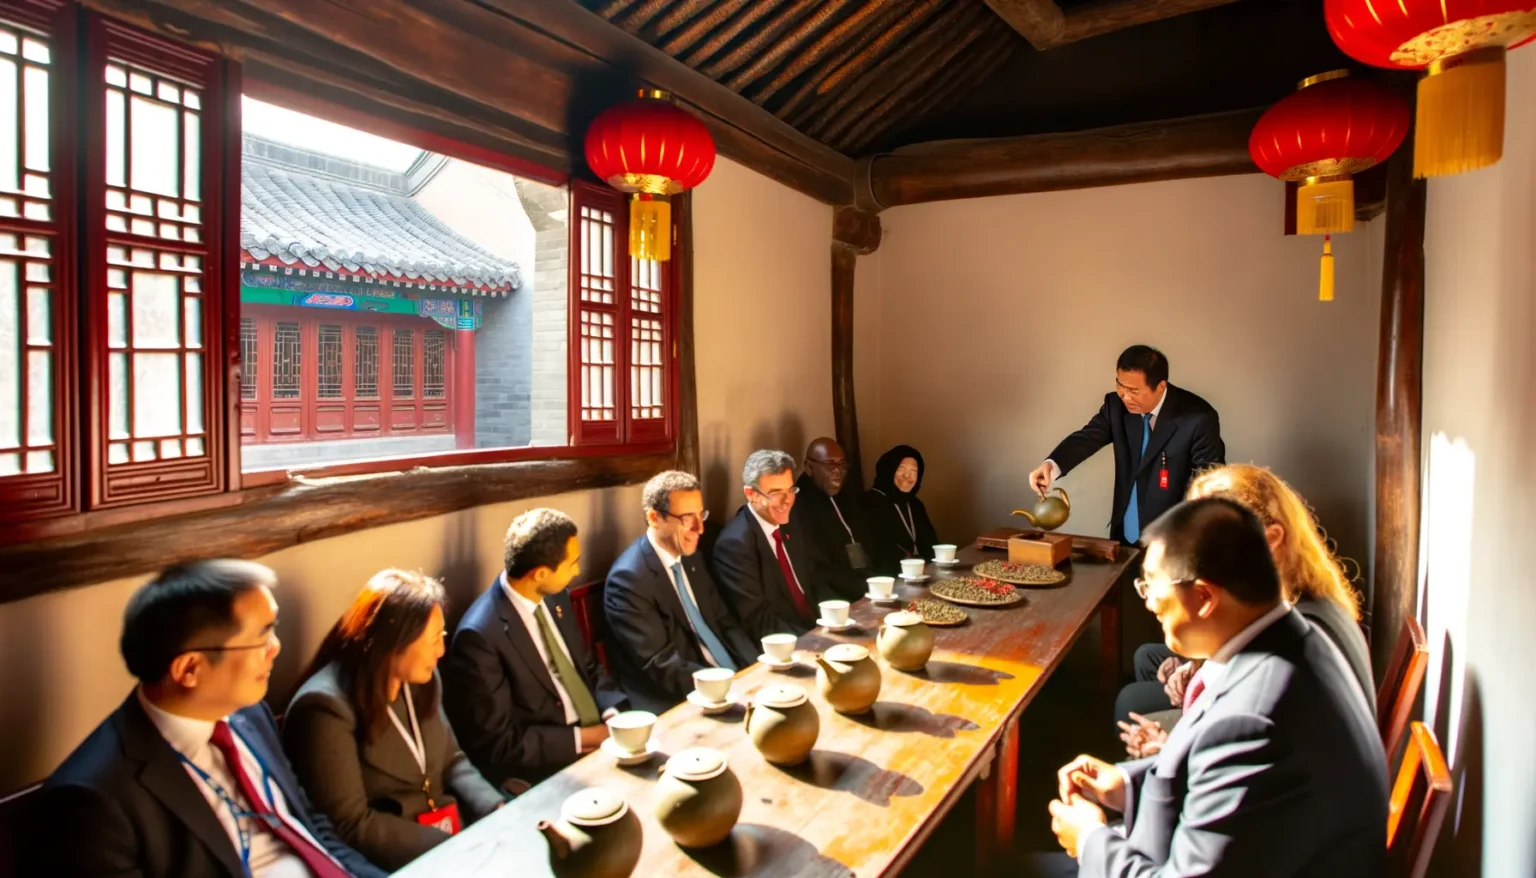 Eine Gruppe von Personen unterschiedlicher ethnischer Herkunft sitzt an einem traditionellen chinesischen Teetisch, während ein Mitarbeiter eine Teekanne gießt. Sie befinden sich in einem Raum mit Holzbalken und roten Papierlaternen, der Sonnenlicht durch ein Fenster hereinlässt. Draußen ist ein Gebäude mit chinesischer Architektur sichtbar.